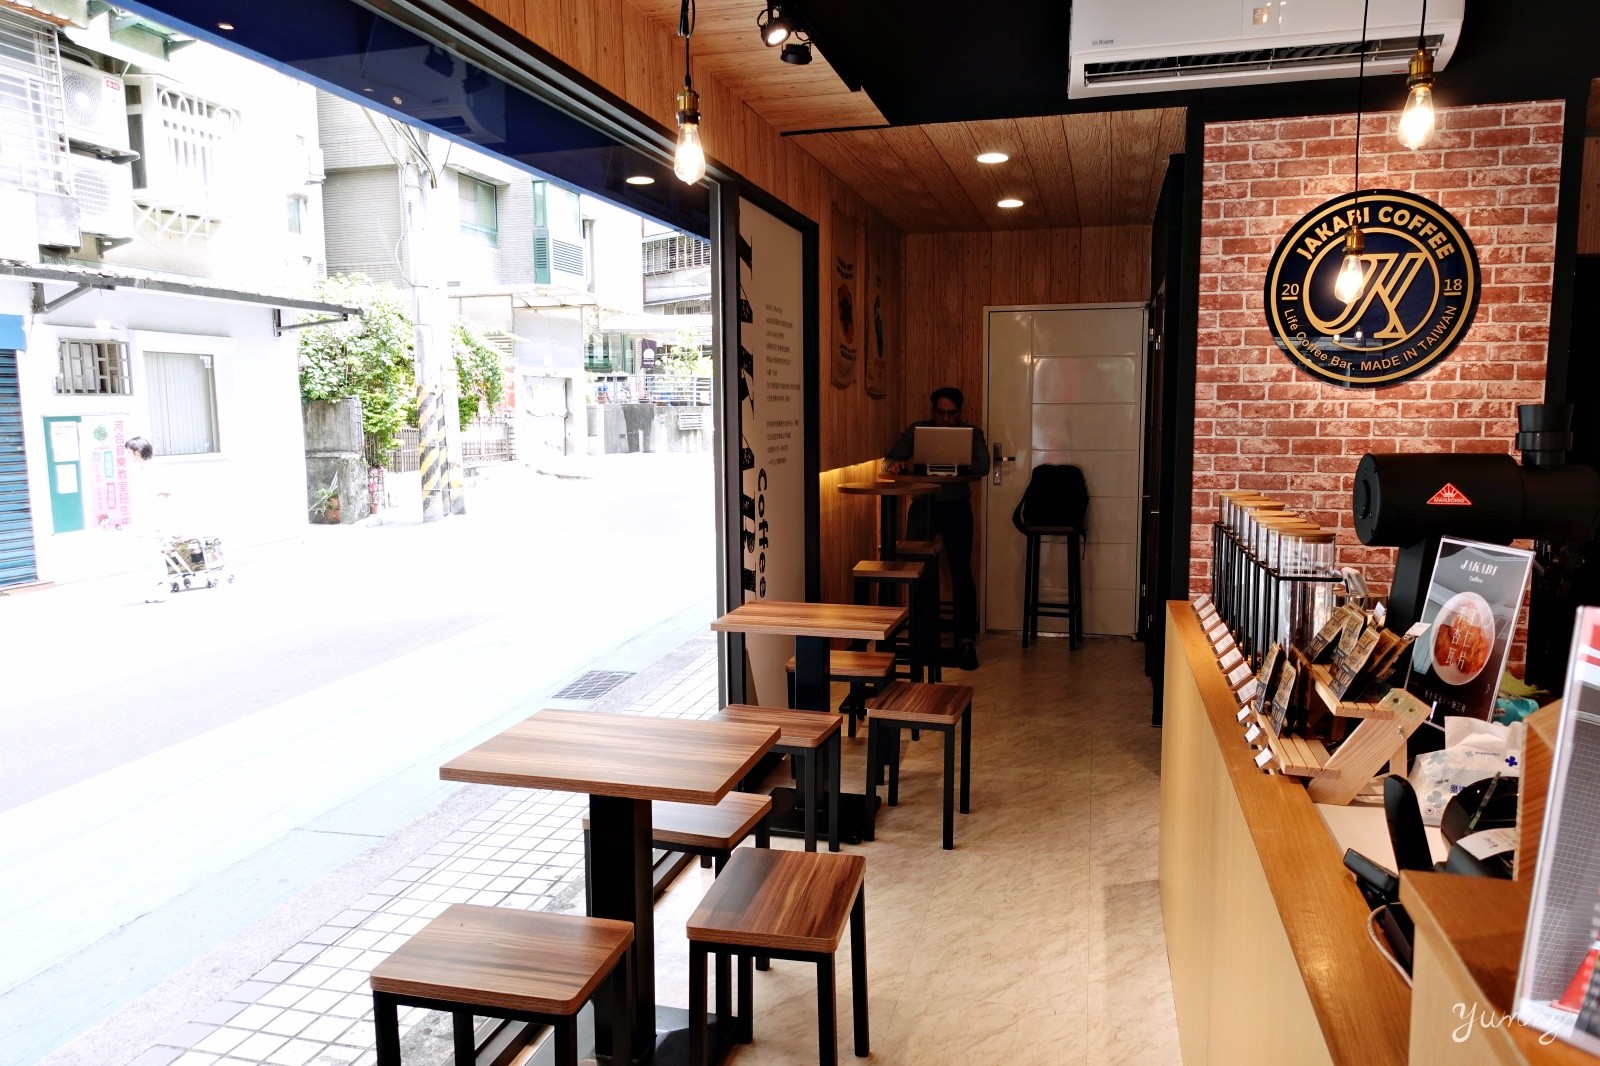 內湖專業咖啡店推薦~「JAKABI嘉愷必咖啡」原味沖煮 完美呈現莊園級咖啡豆風味